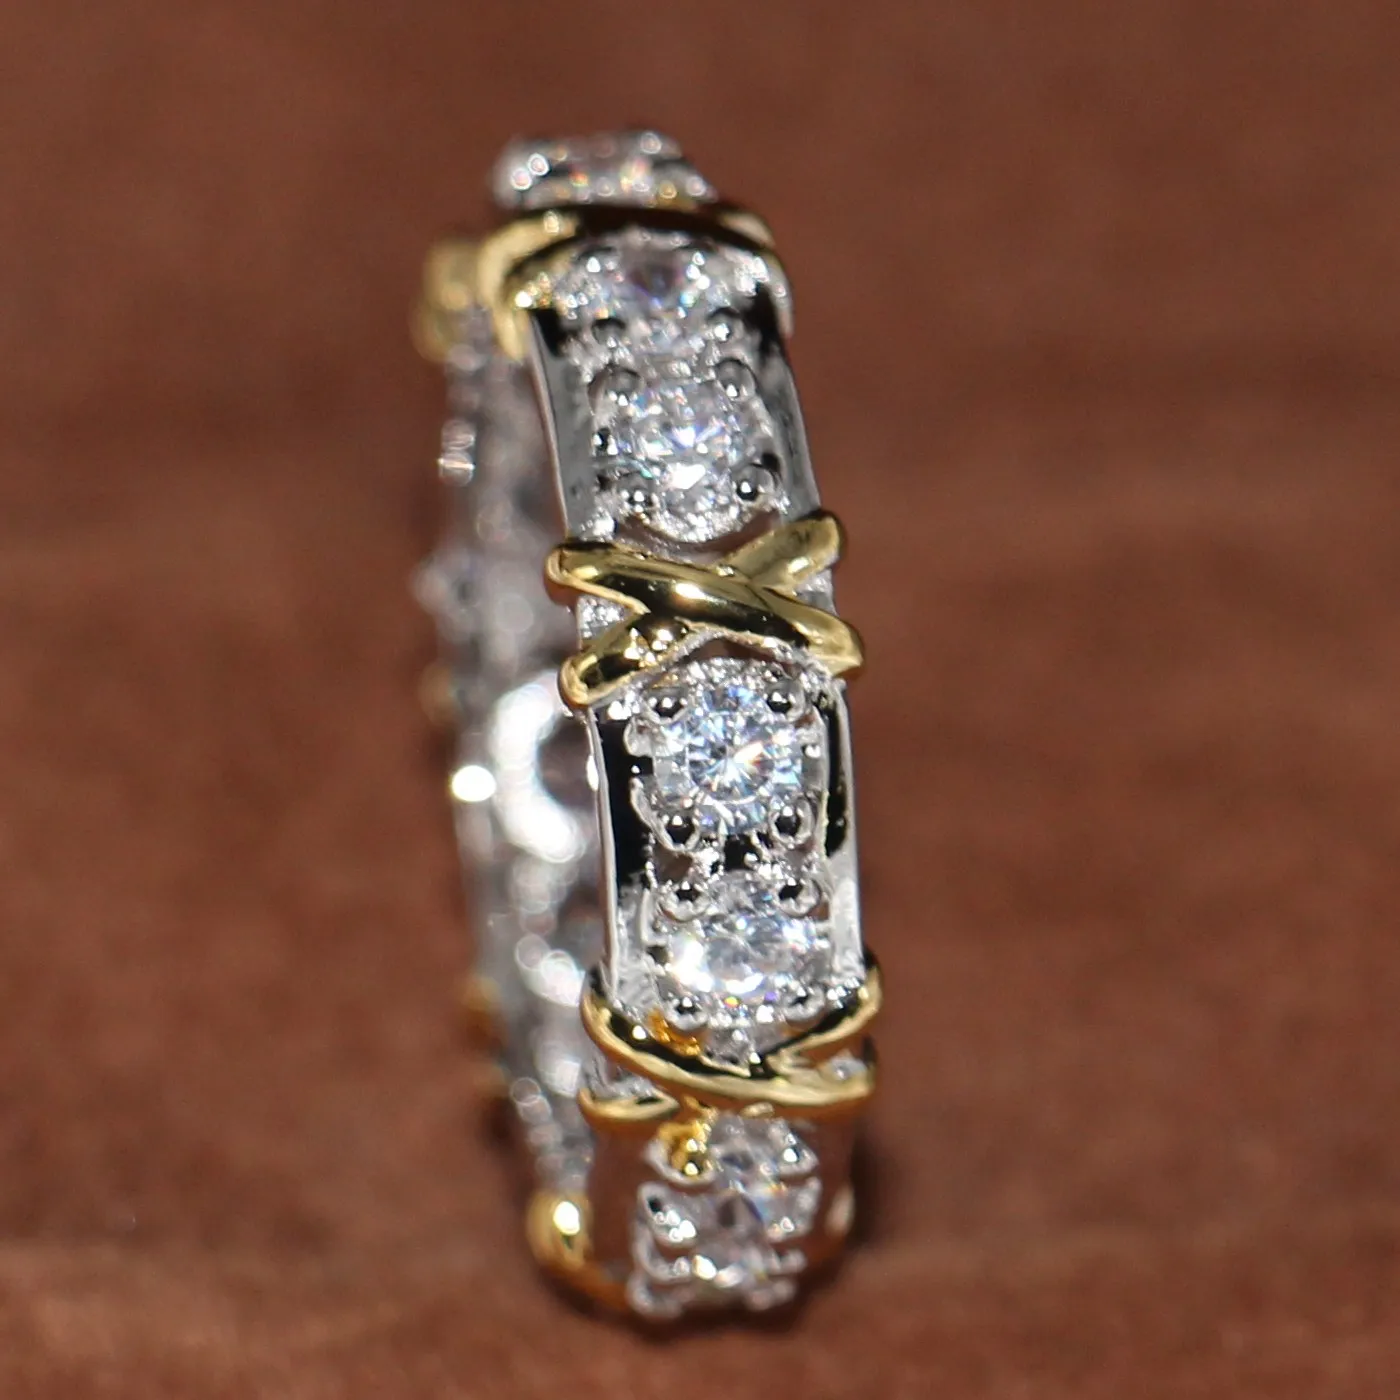 Whole Professional Eternity Diamonique CZ Diamant simulé 10KT Or Blanc Jaune Rempli Alliance Croix Bague Taille 5-11213p